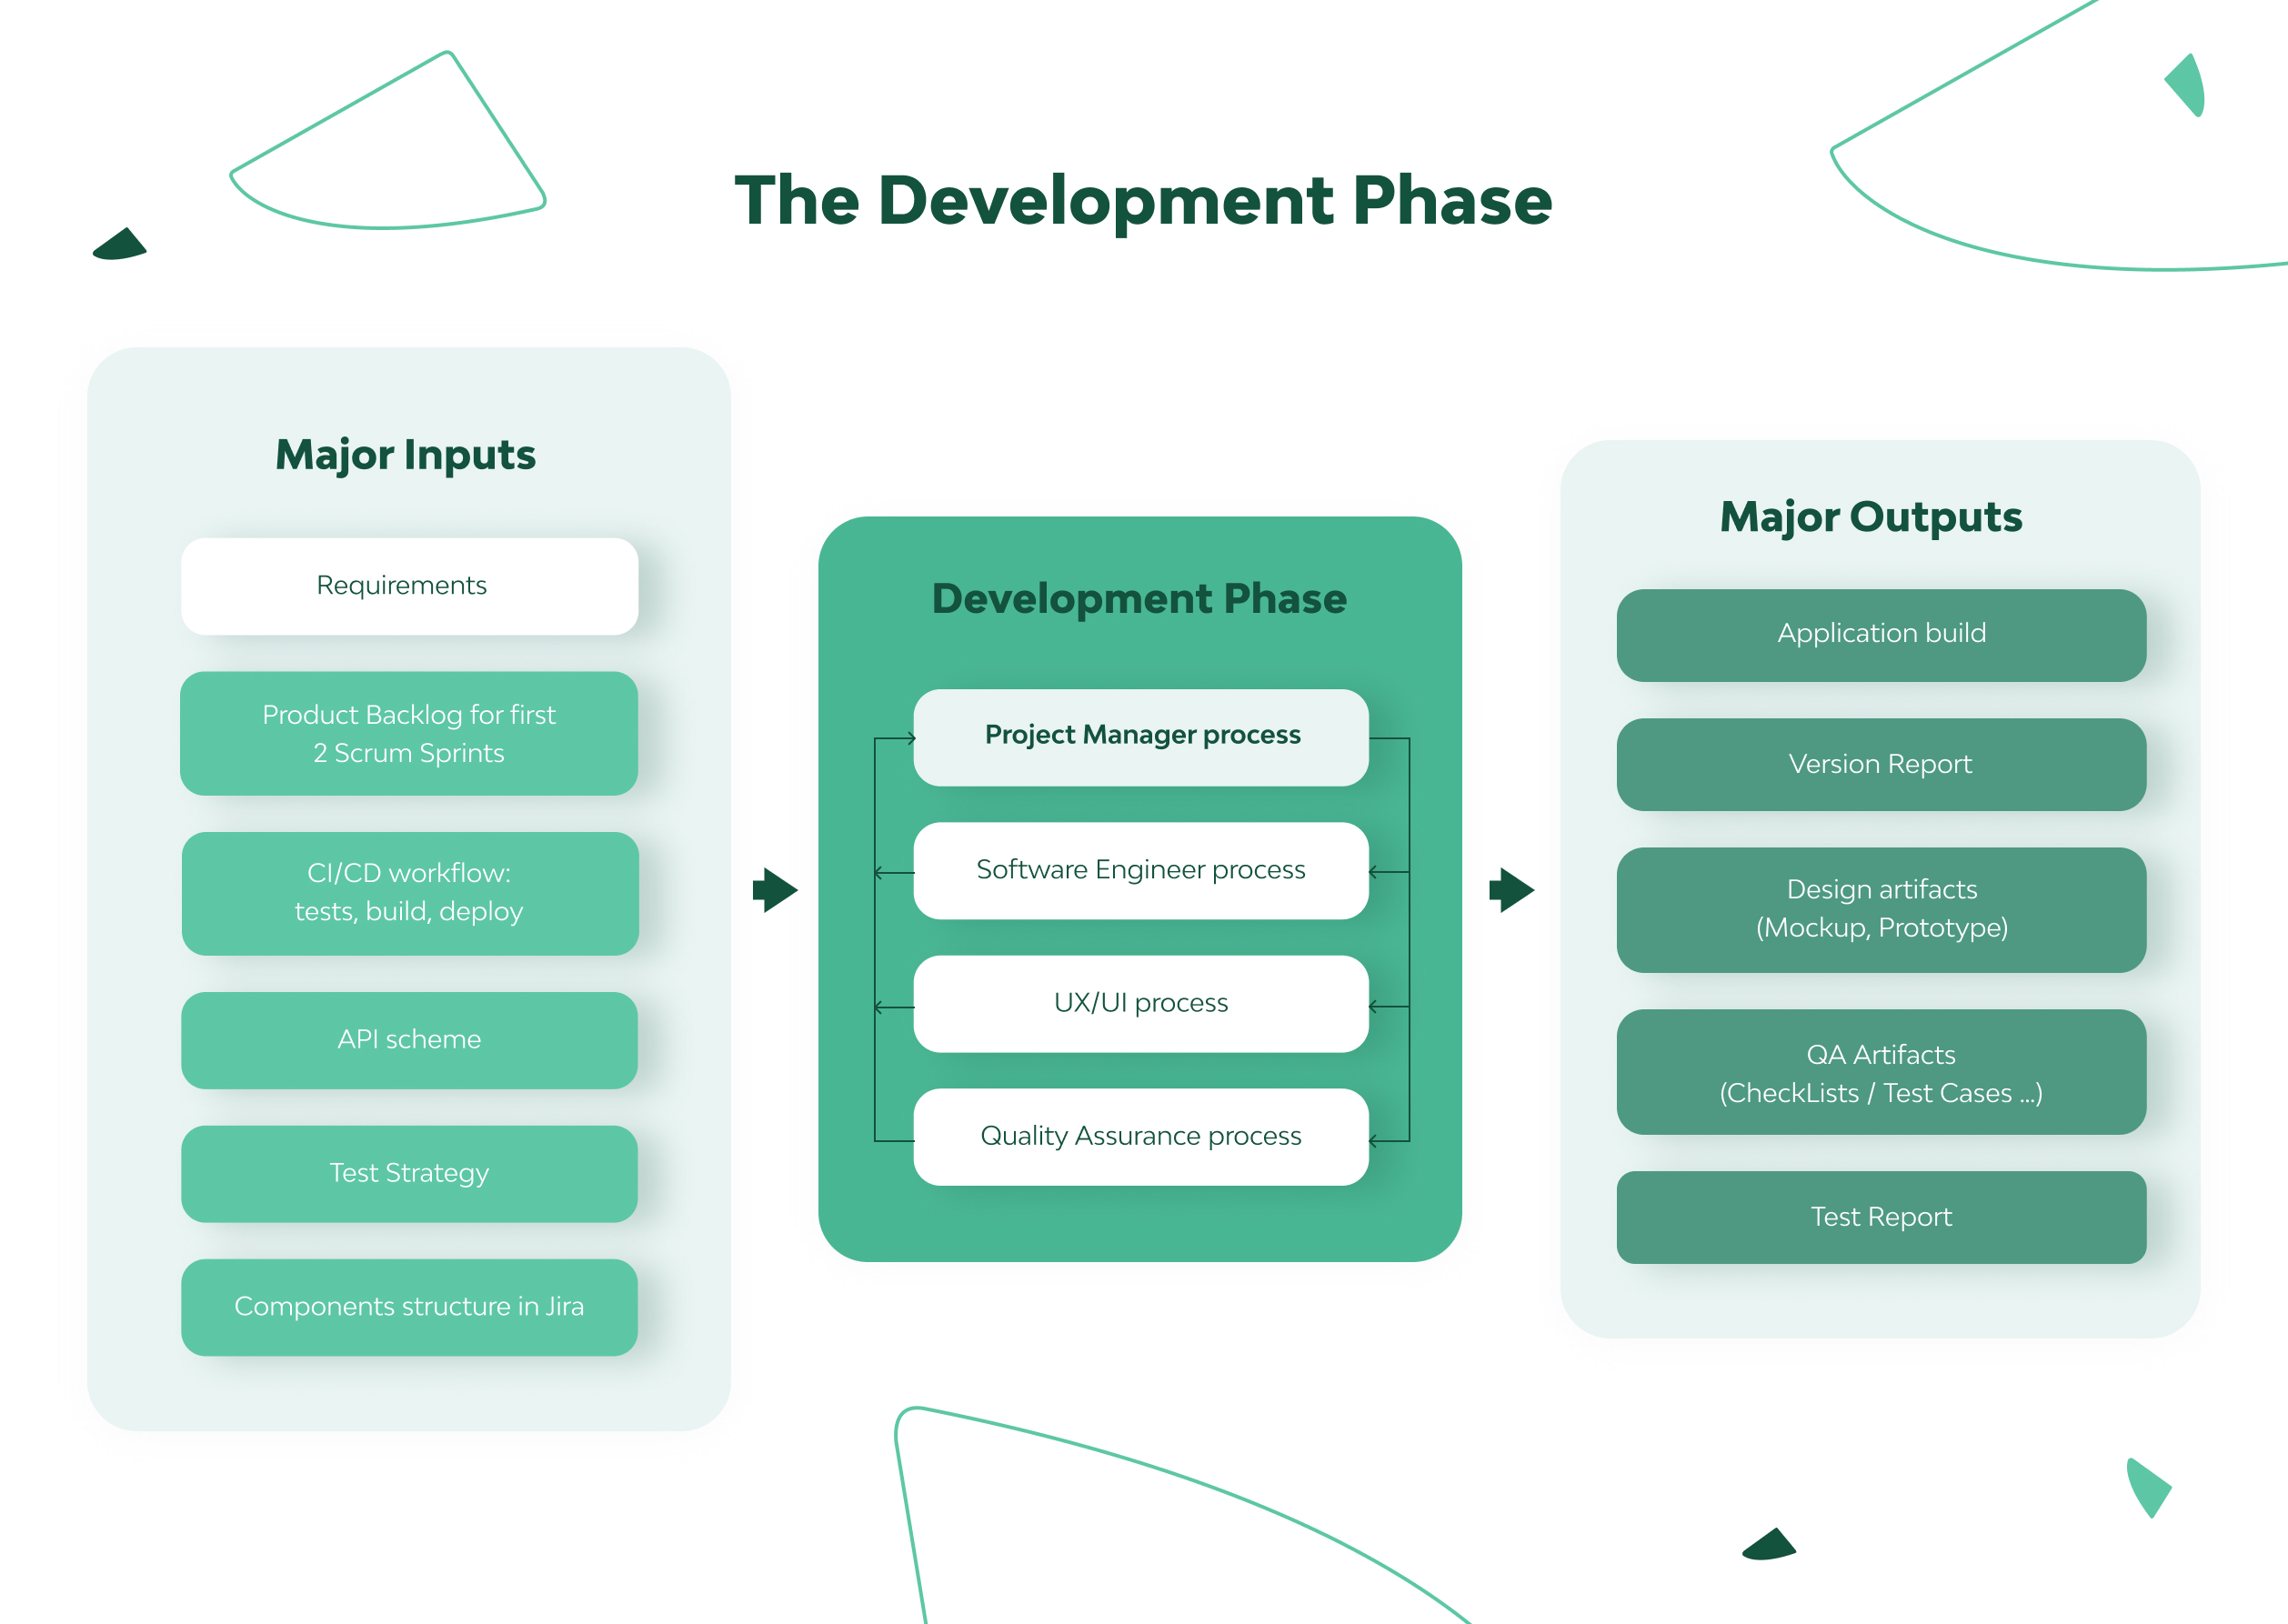 software development process